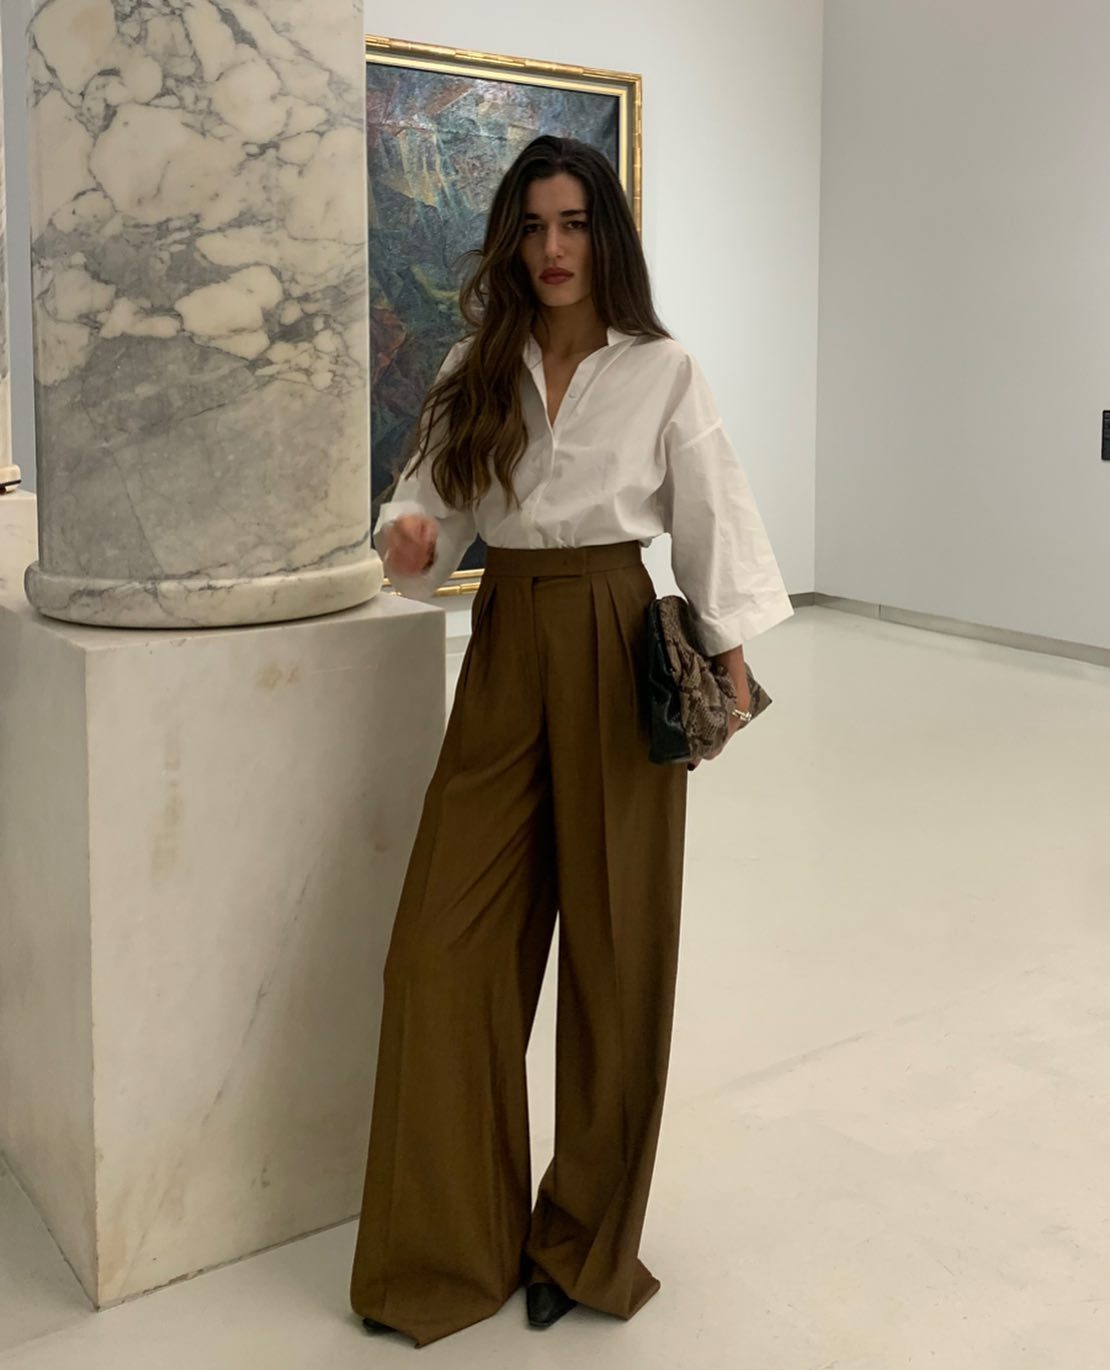 Ilirida Krasniqi con pantalón ancho de pinzas con camisa.